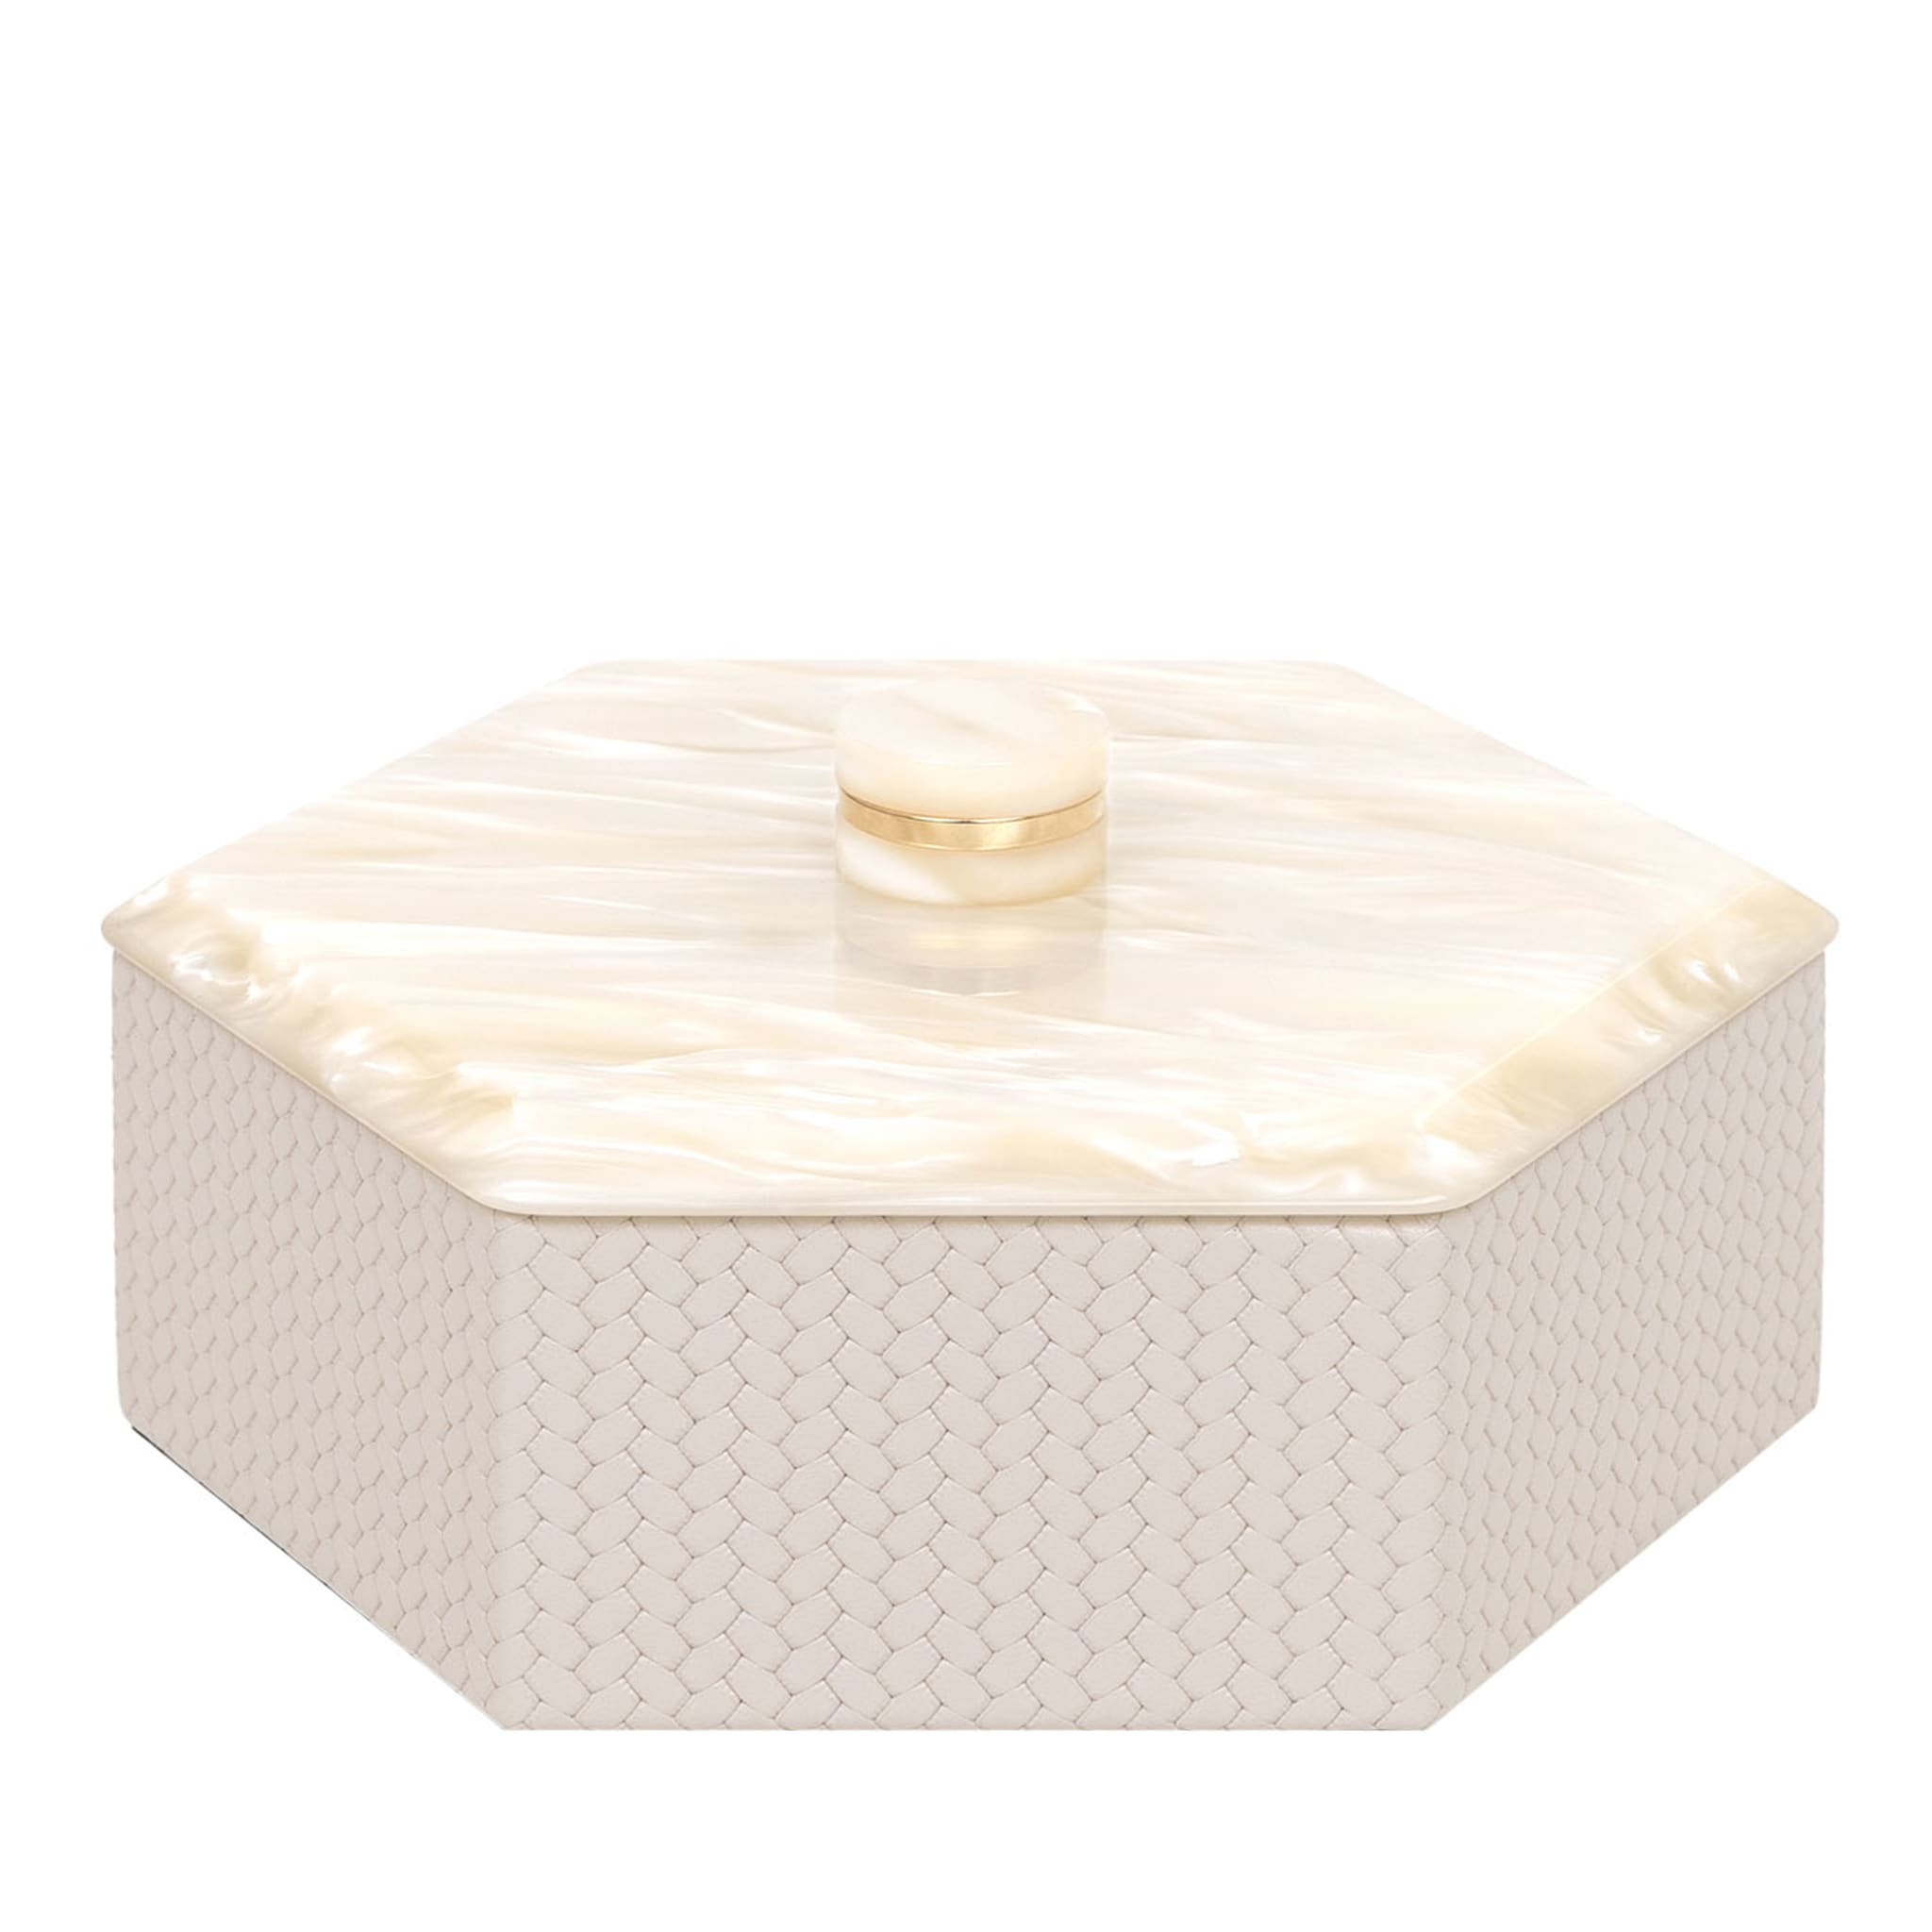 Kelly Low Petite boîte à crème hexagonale avec couvercle - Vue principale